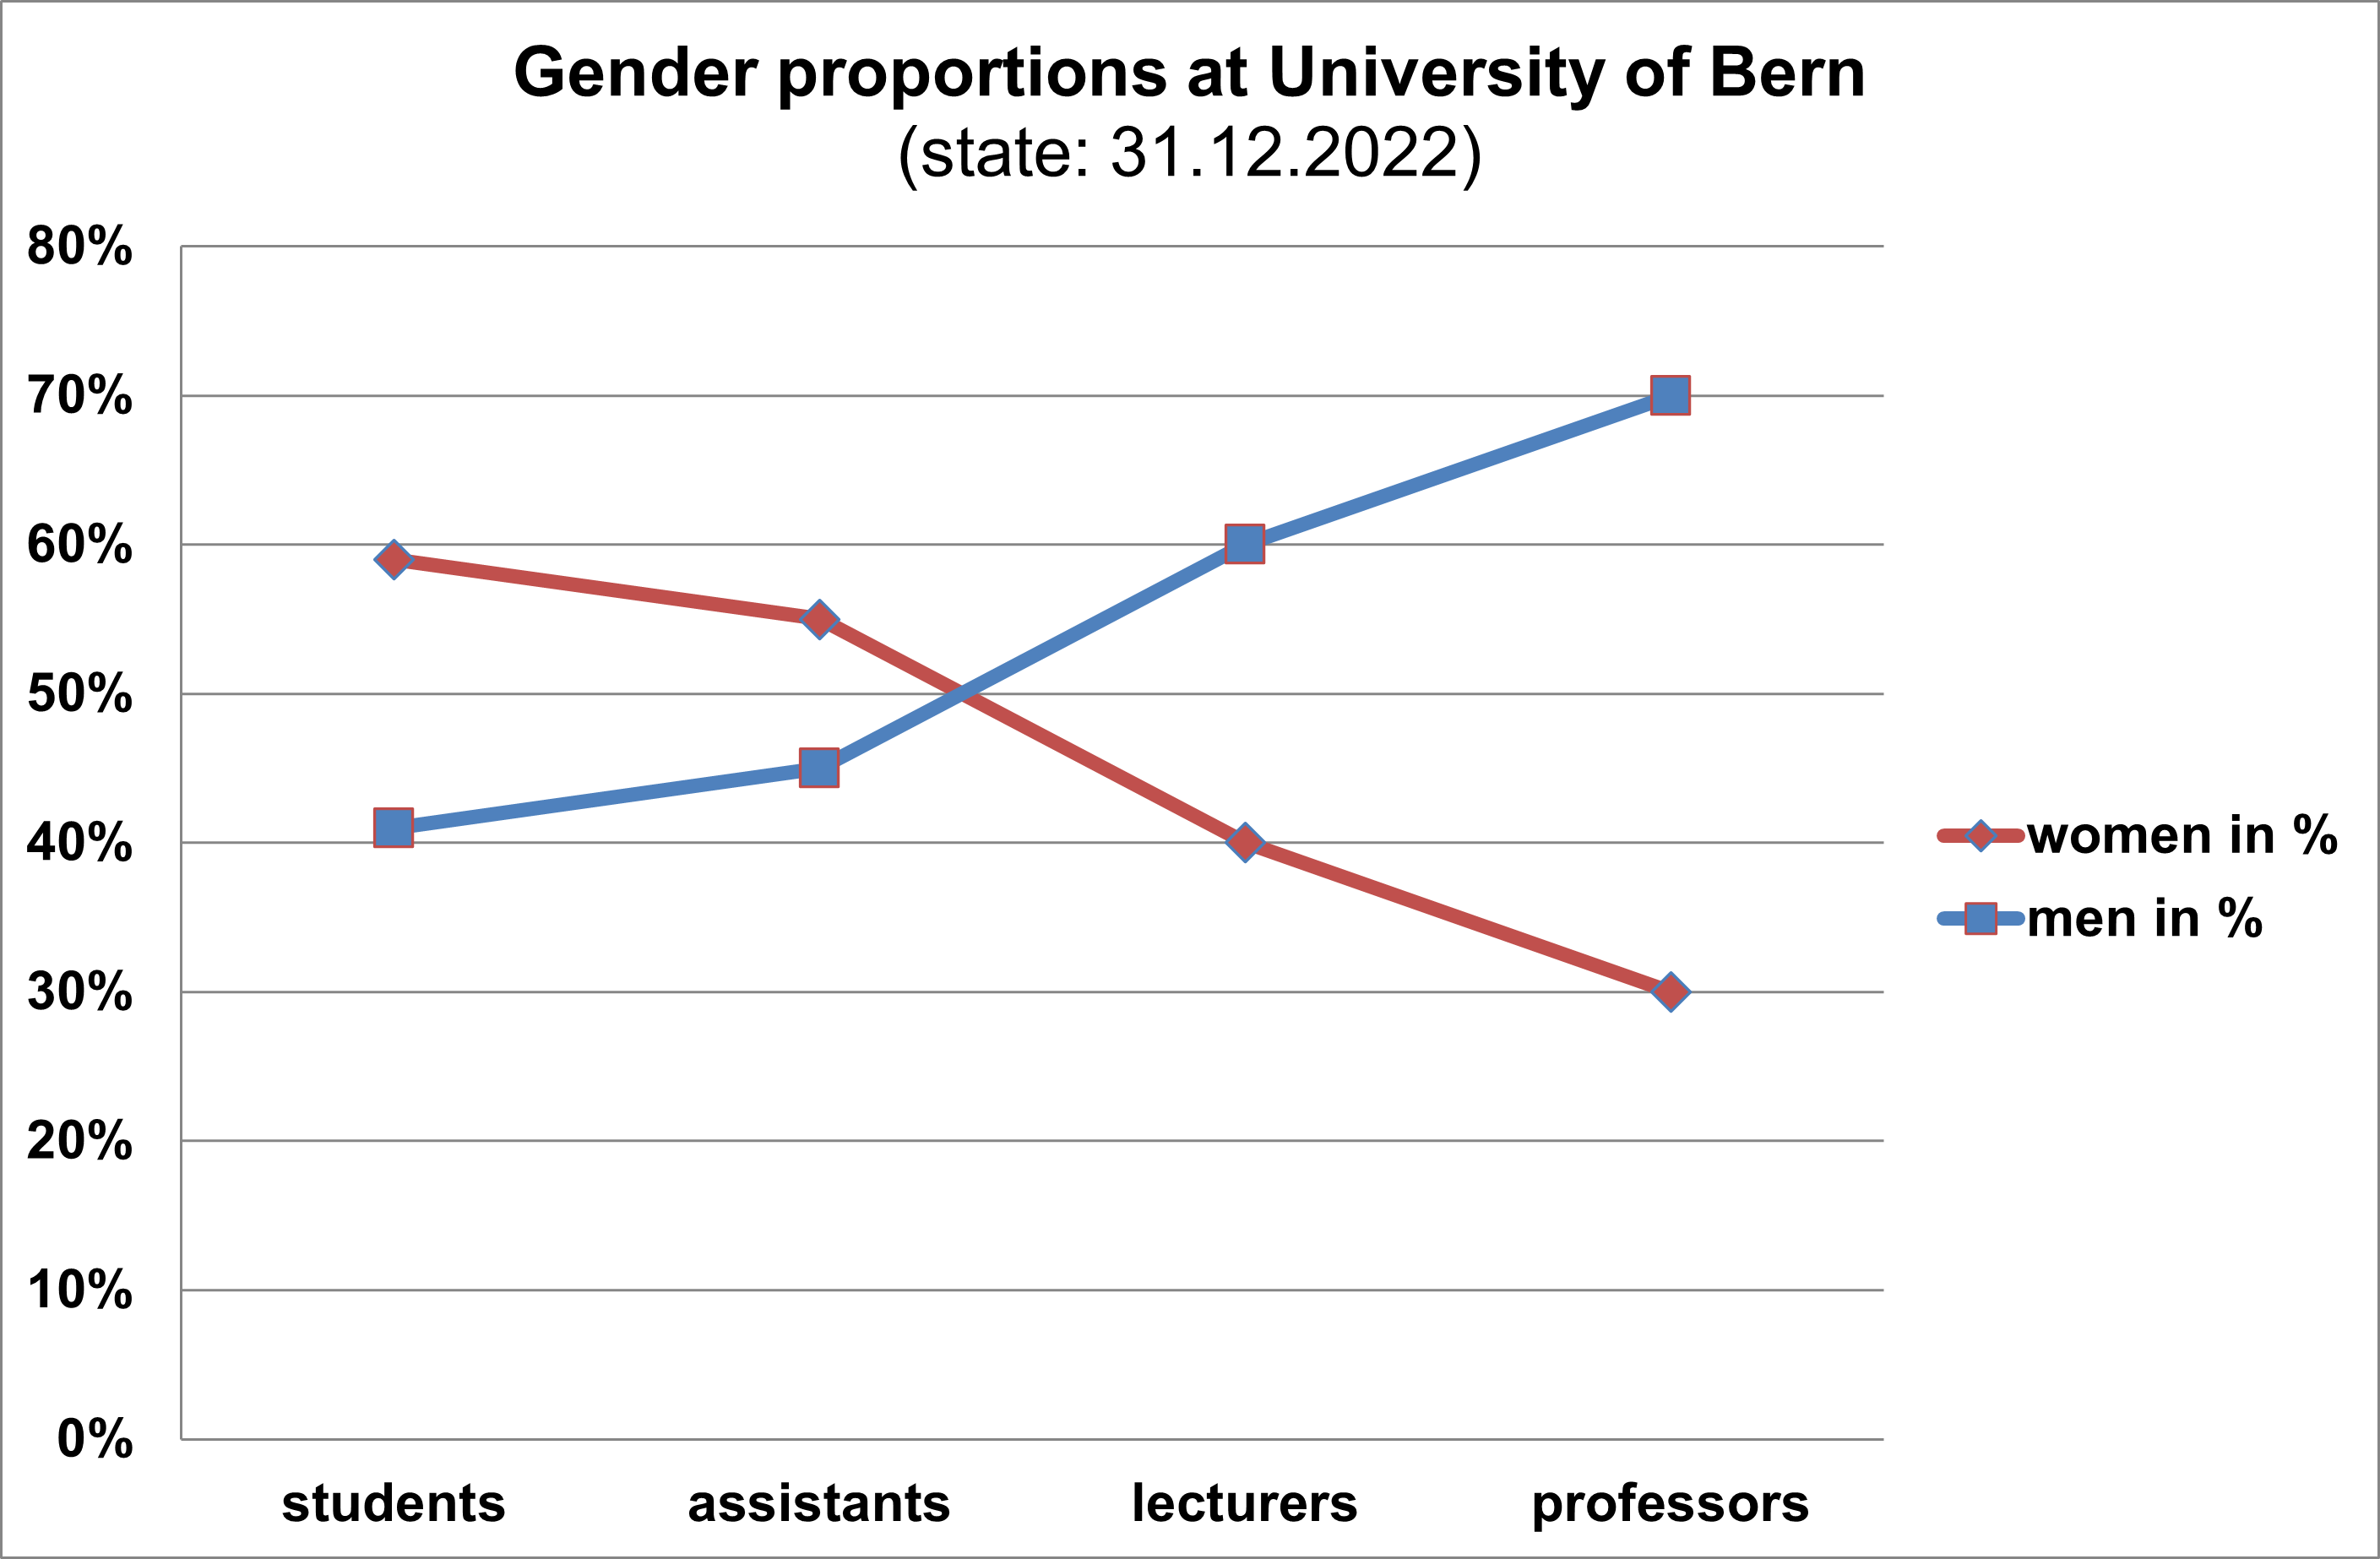 Grafik Geschlechteranteile an der Universität Bern